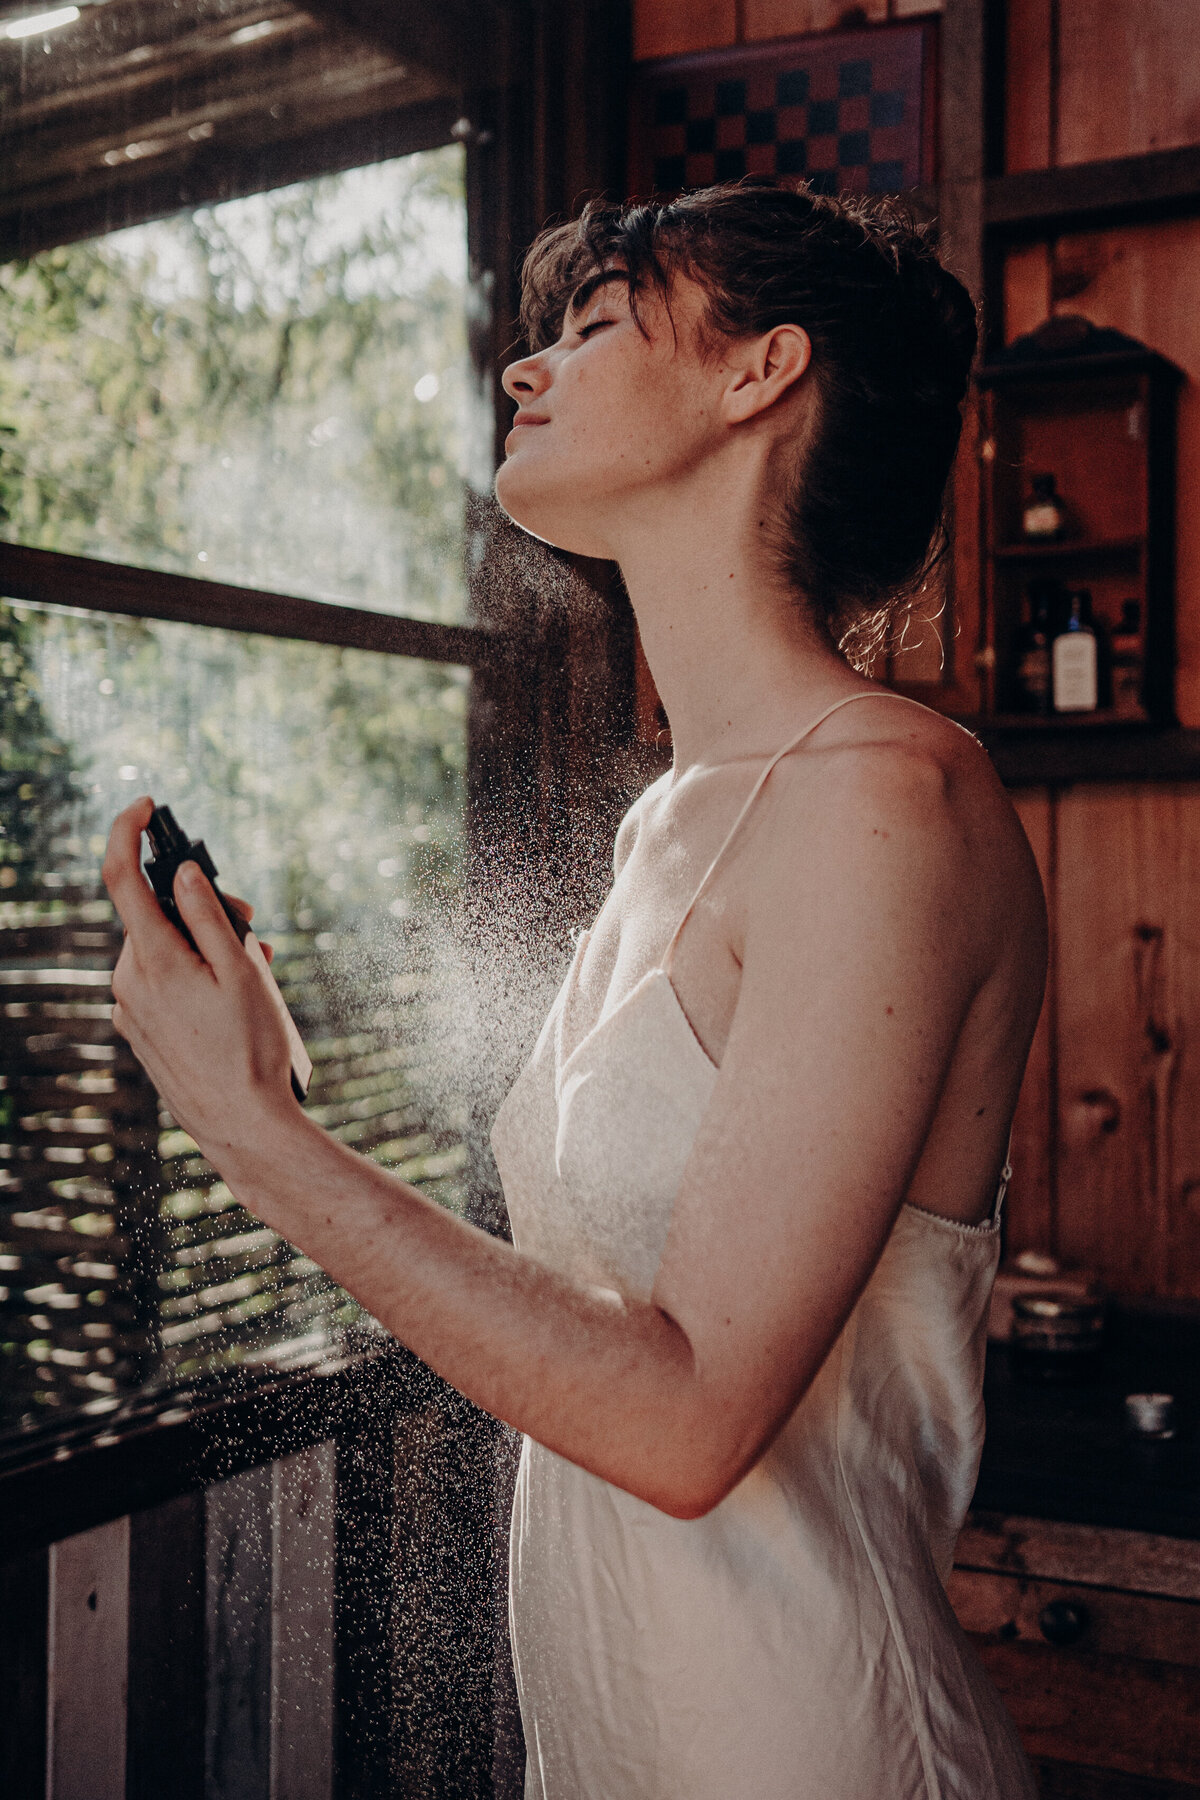 Female model spraying oil on her skin.